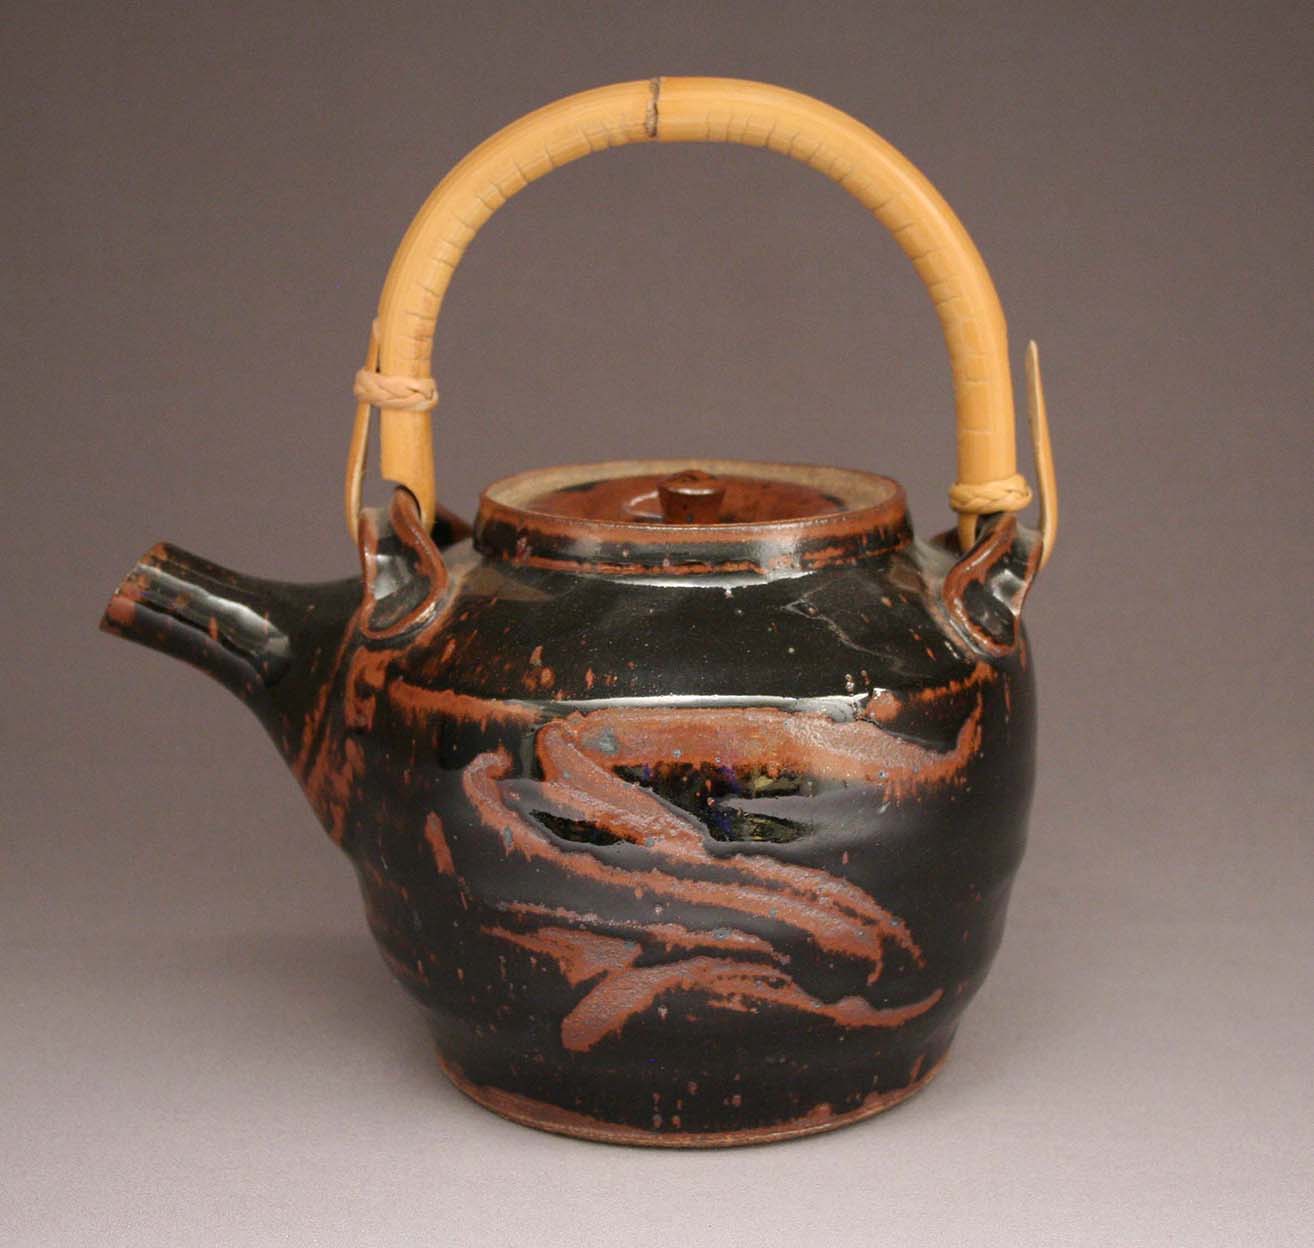 Warren Mackenzie—stoneware and cane teapot